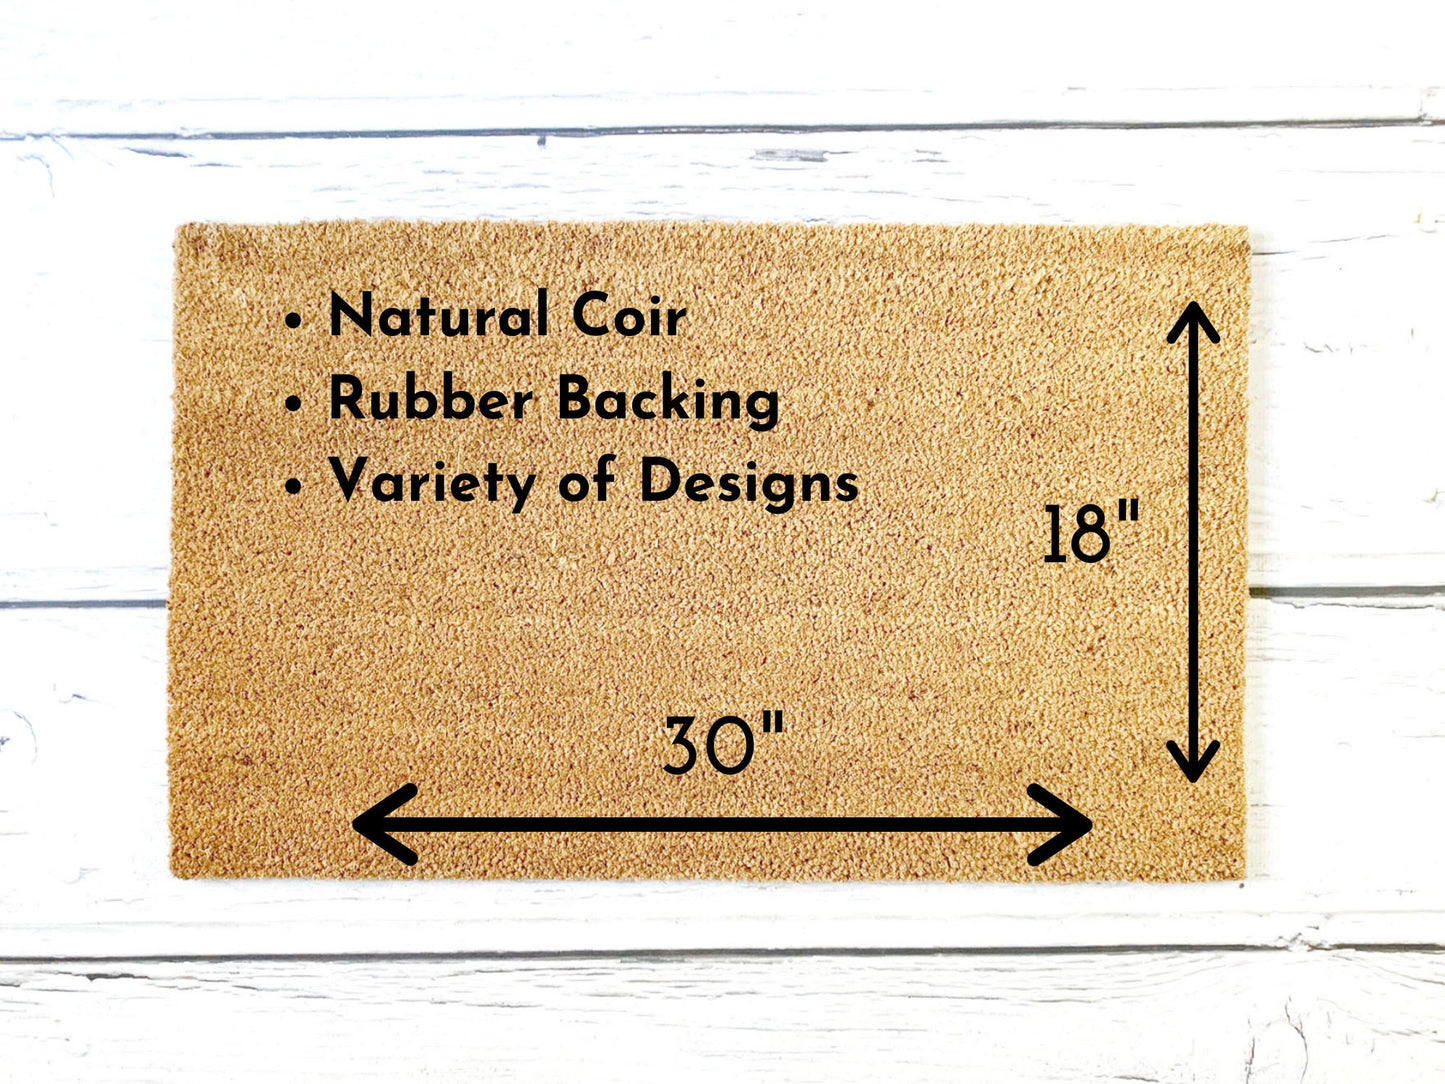 Believe in the Magic Doormat | Custom Painted Doormat | Housewarming Gift | Closing Gift | Welcome Doormat | Front Door Mat | Home Decor